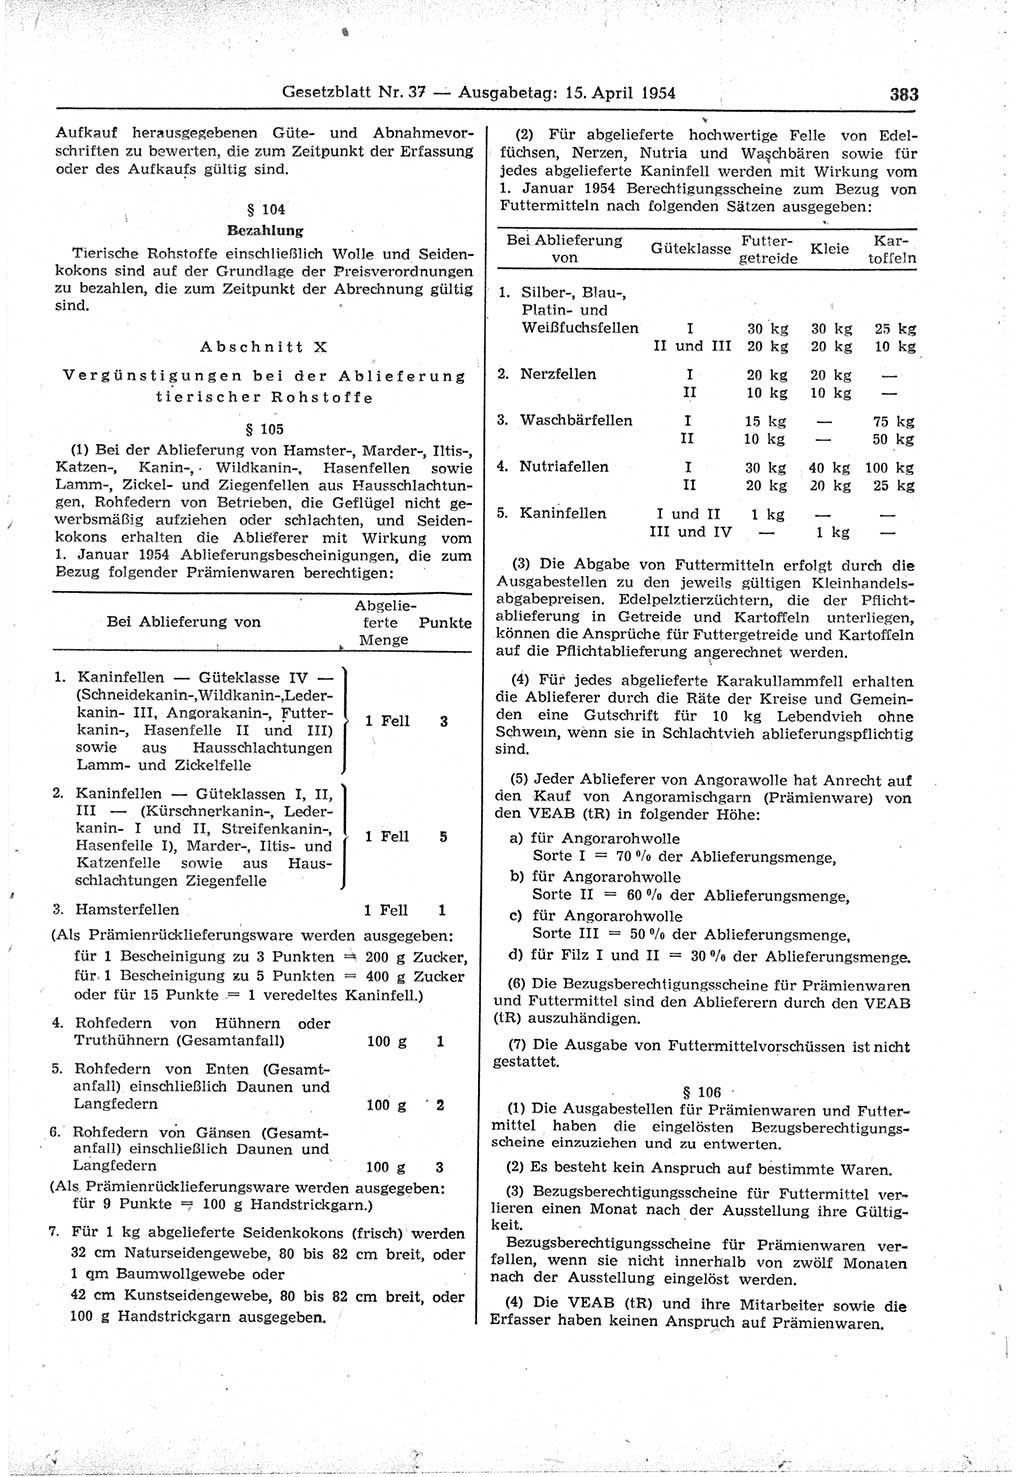 Gesetzblatt (GBl.) der Deutschen Demokratischen Republik (DDR) 1954, Seite 383 (GBl. DDR 1954, S. 383)